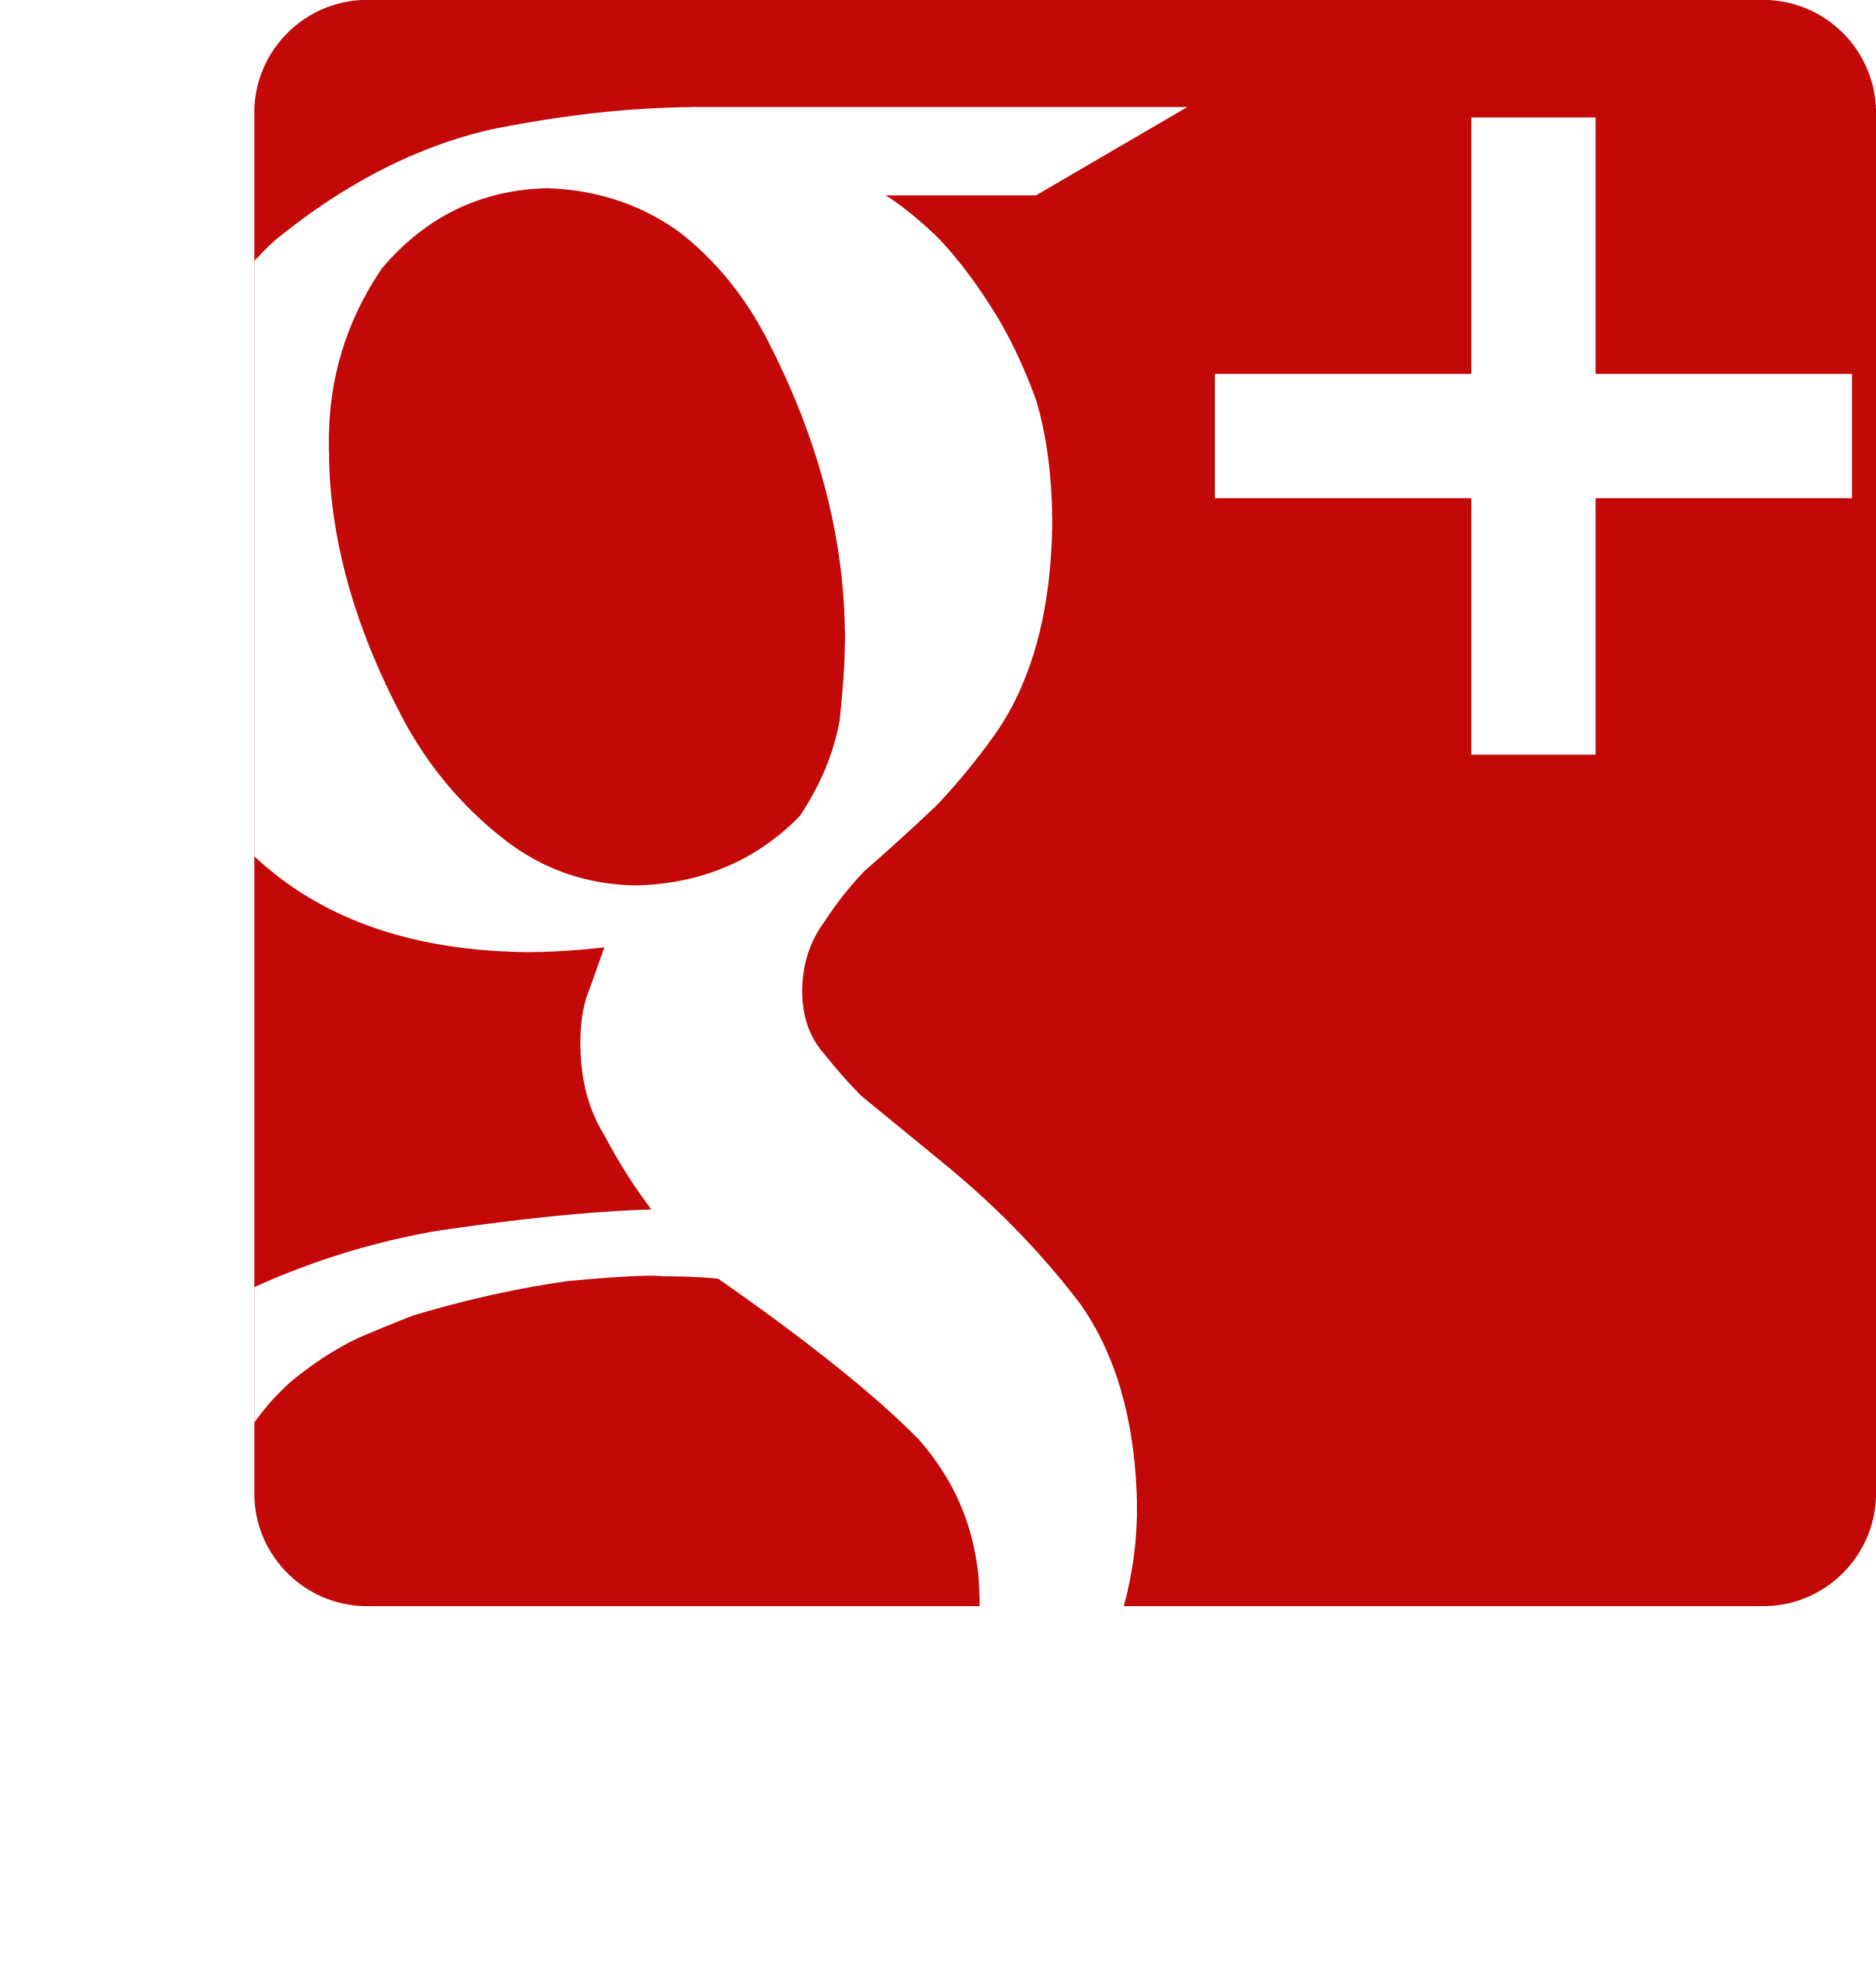 6 Google Plus Icon Transparent Images  Google Plus Logo